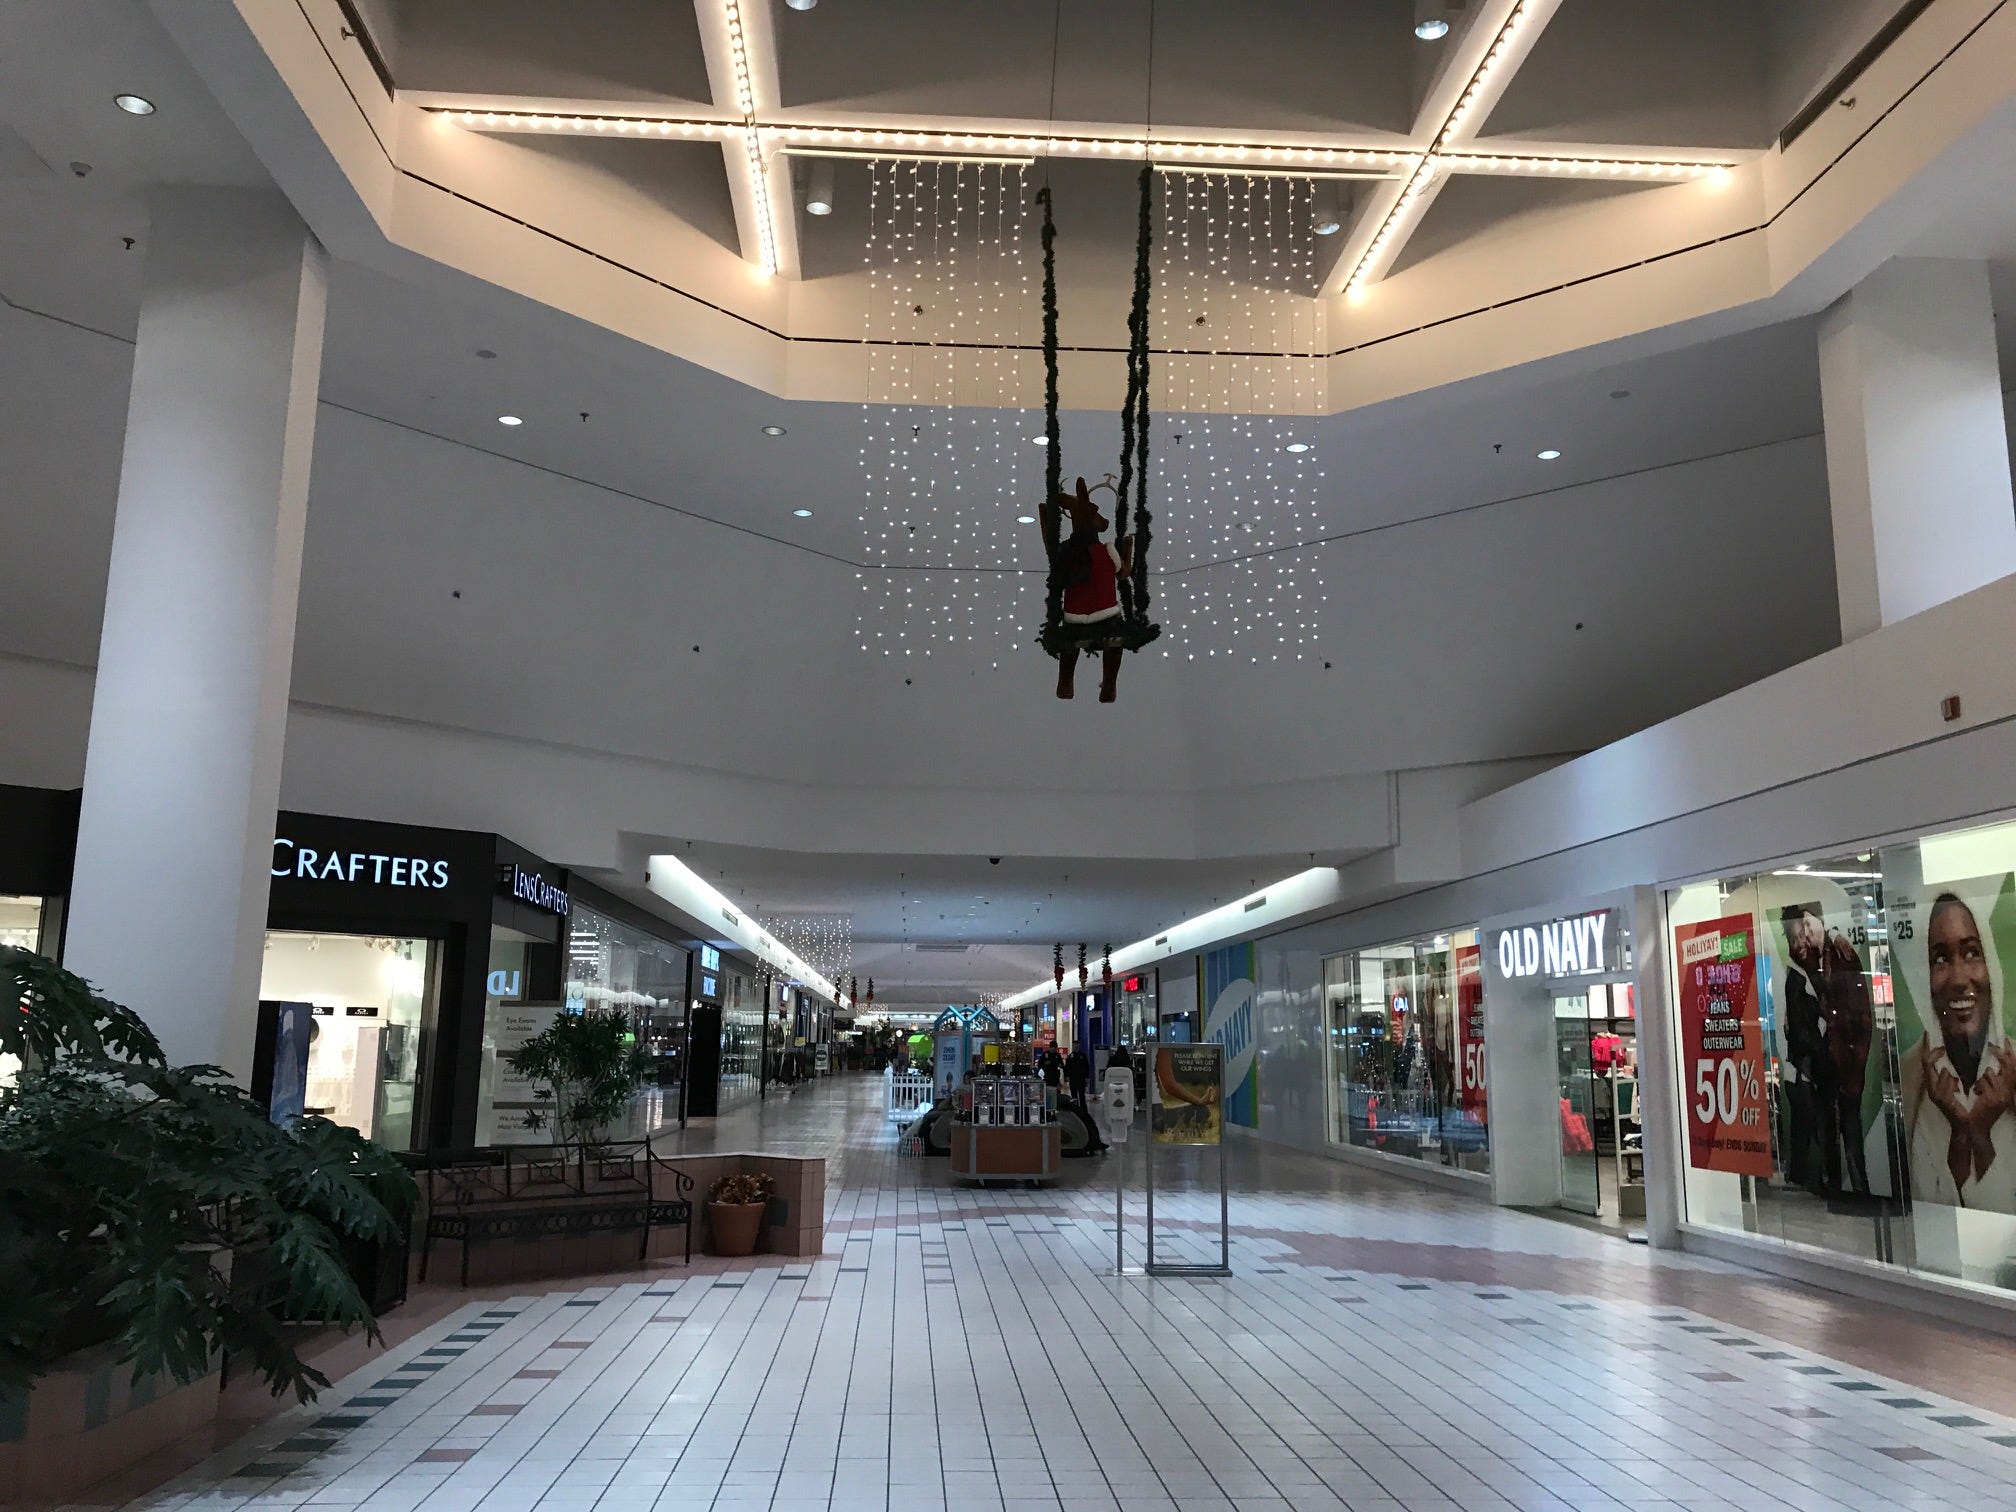 hollister greece mall